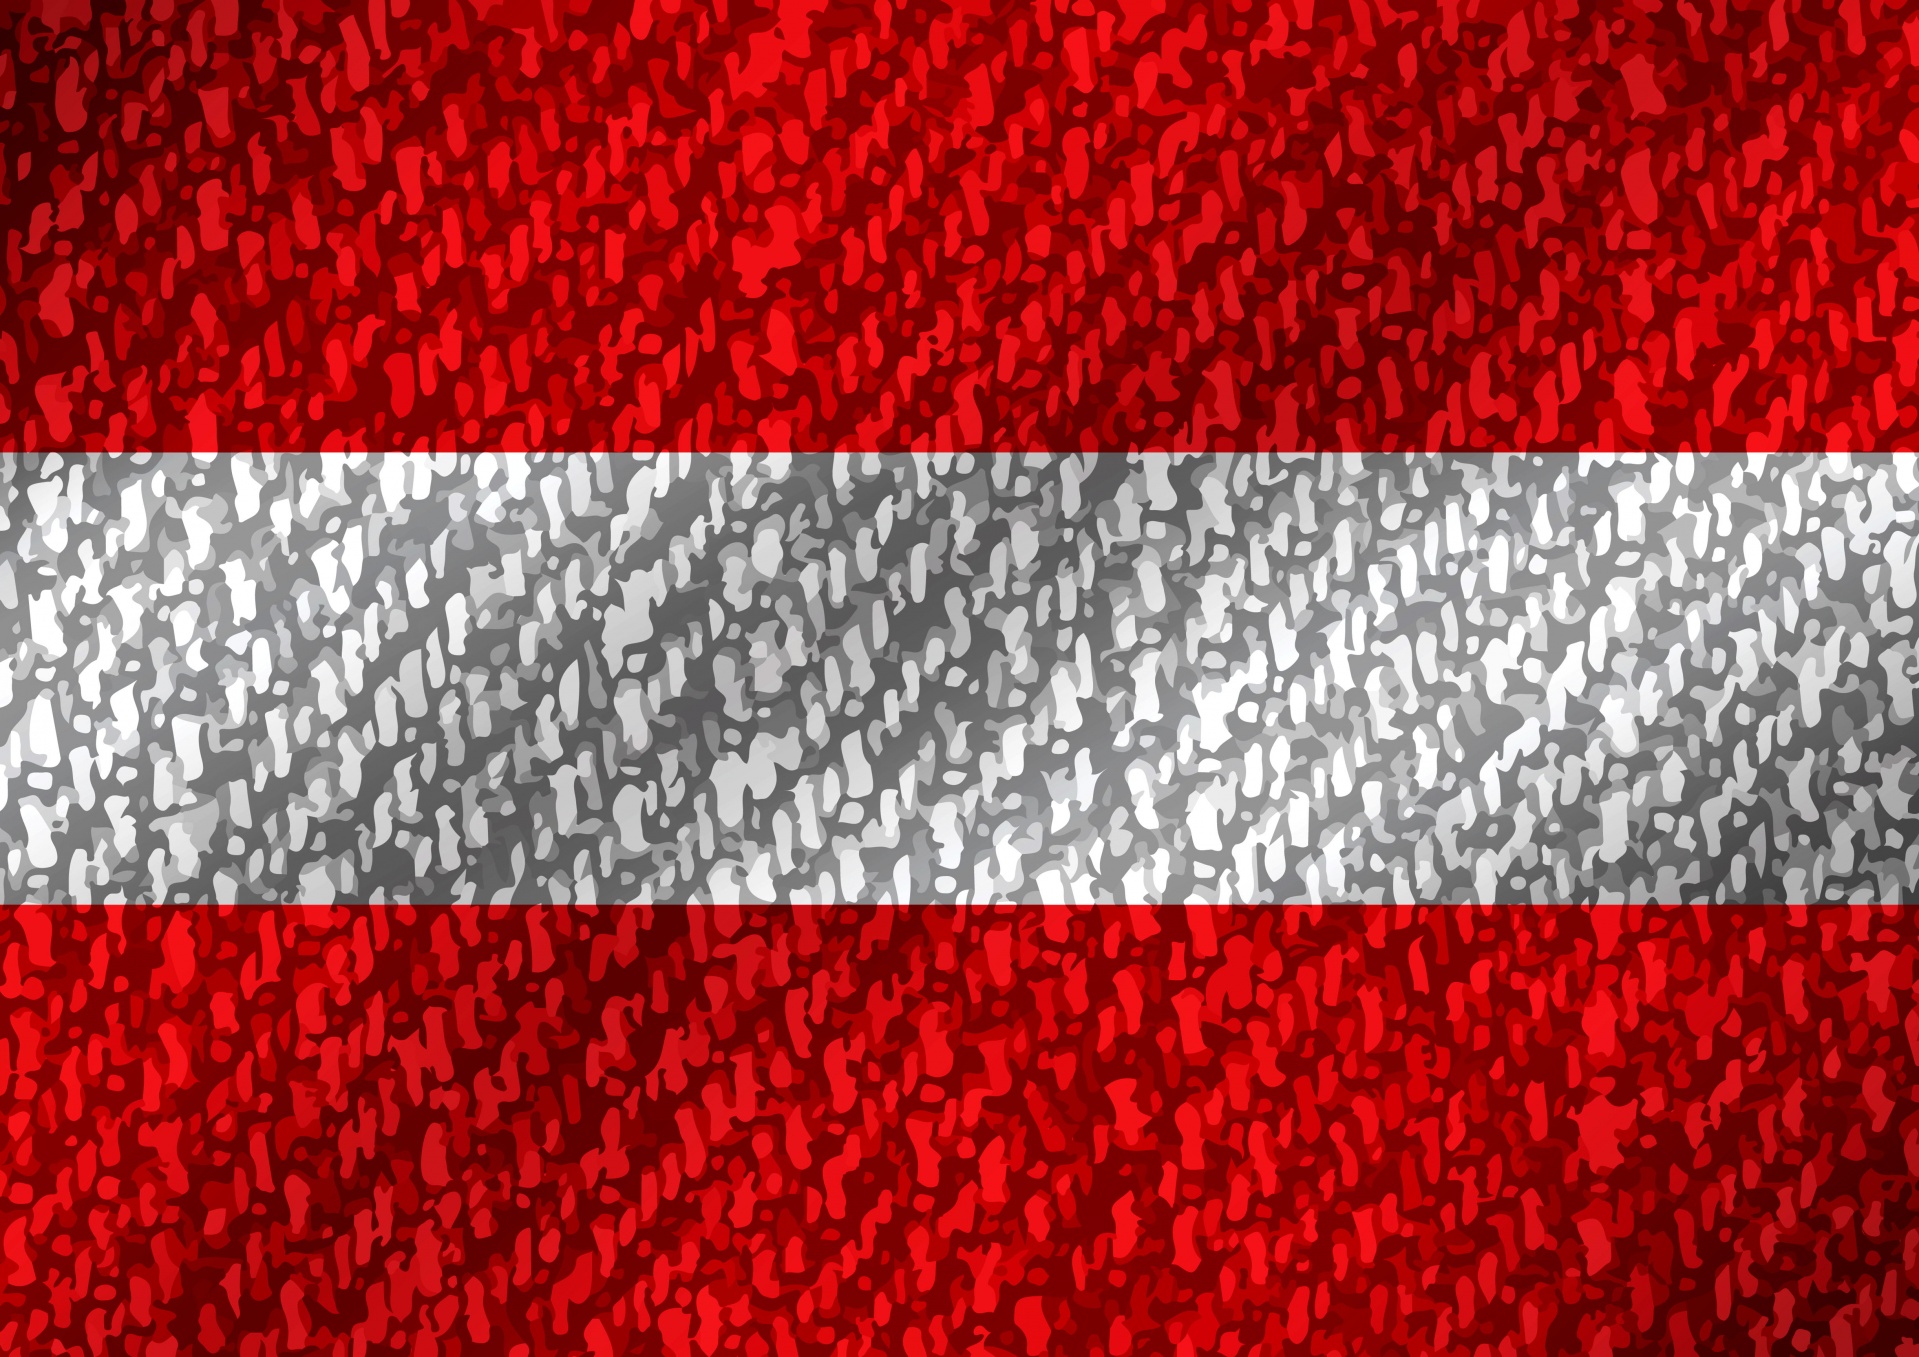 オーストリアのテーマデザインの国旗 無料画像 Public Domain Pictures